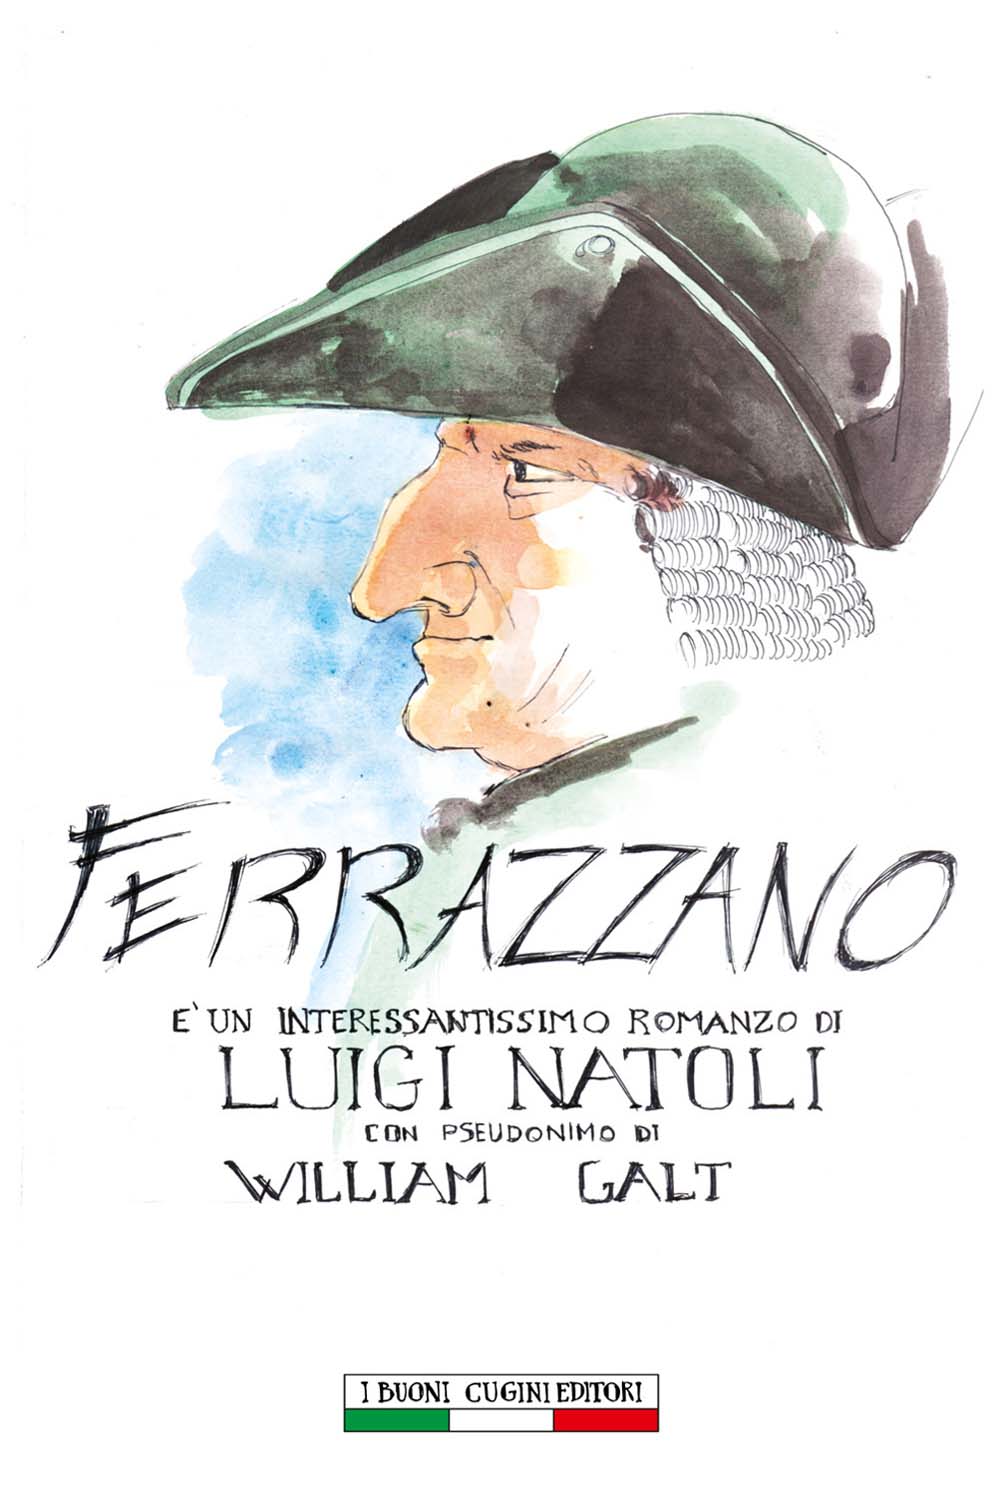 Libri William Galt - Ferrazzano NUOVO SIGILLATO, EDIZIONE DEL 01/08/2014 SUBITO DISPONIBILE